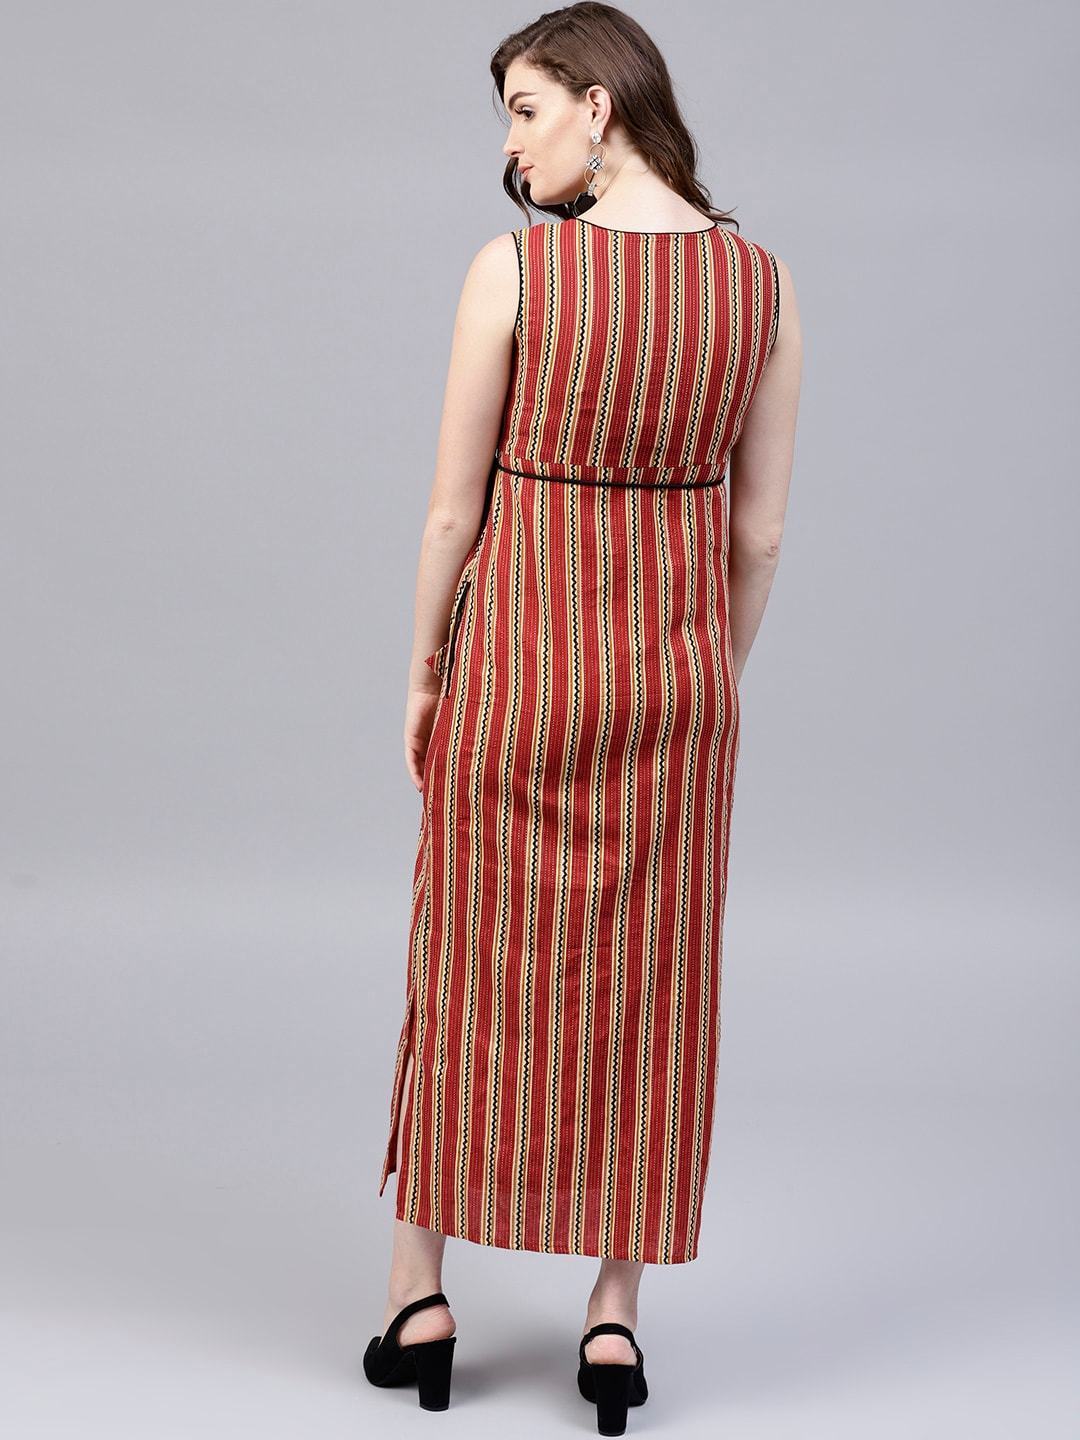 Women's  Rust Red & Beige Striped Empire Dress - AKS